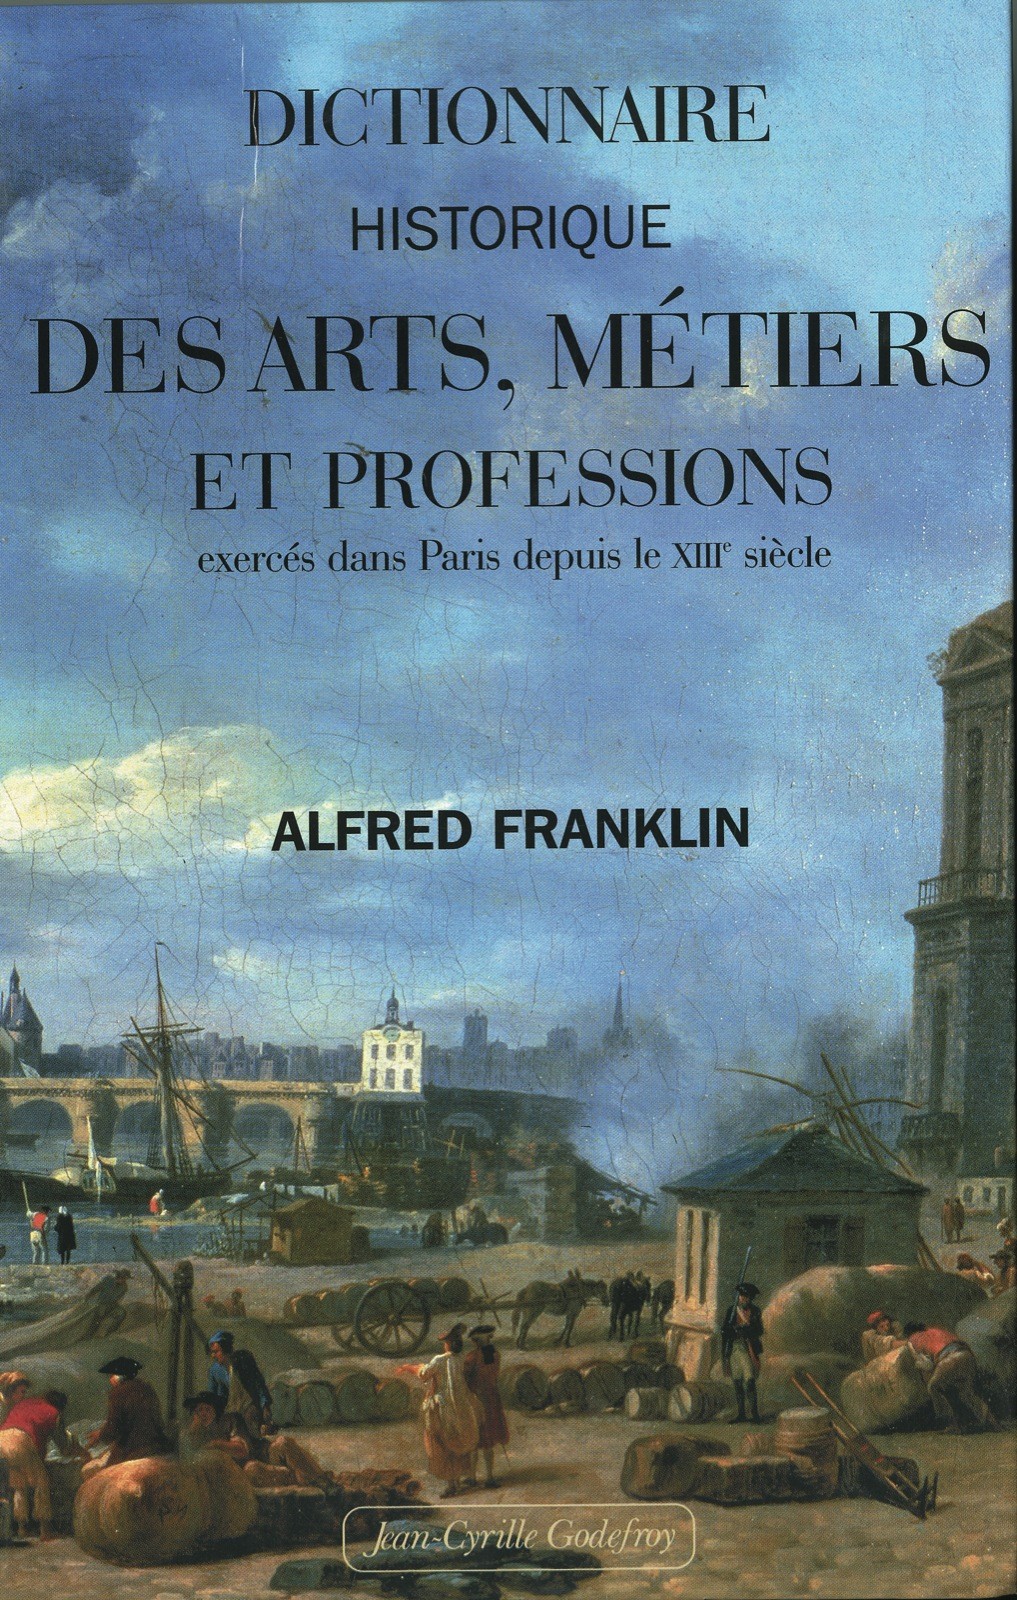 Dictionnaire historique des arts, métiers et professions exercés dans Paris depuis le XVIIIe siècle